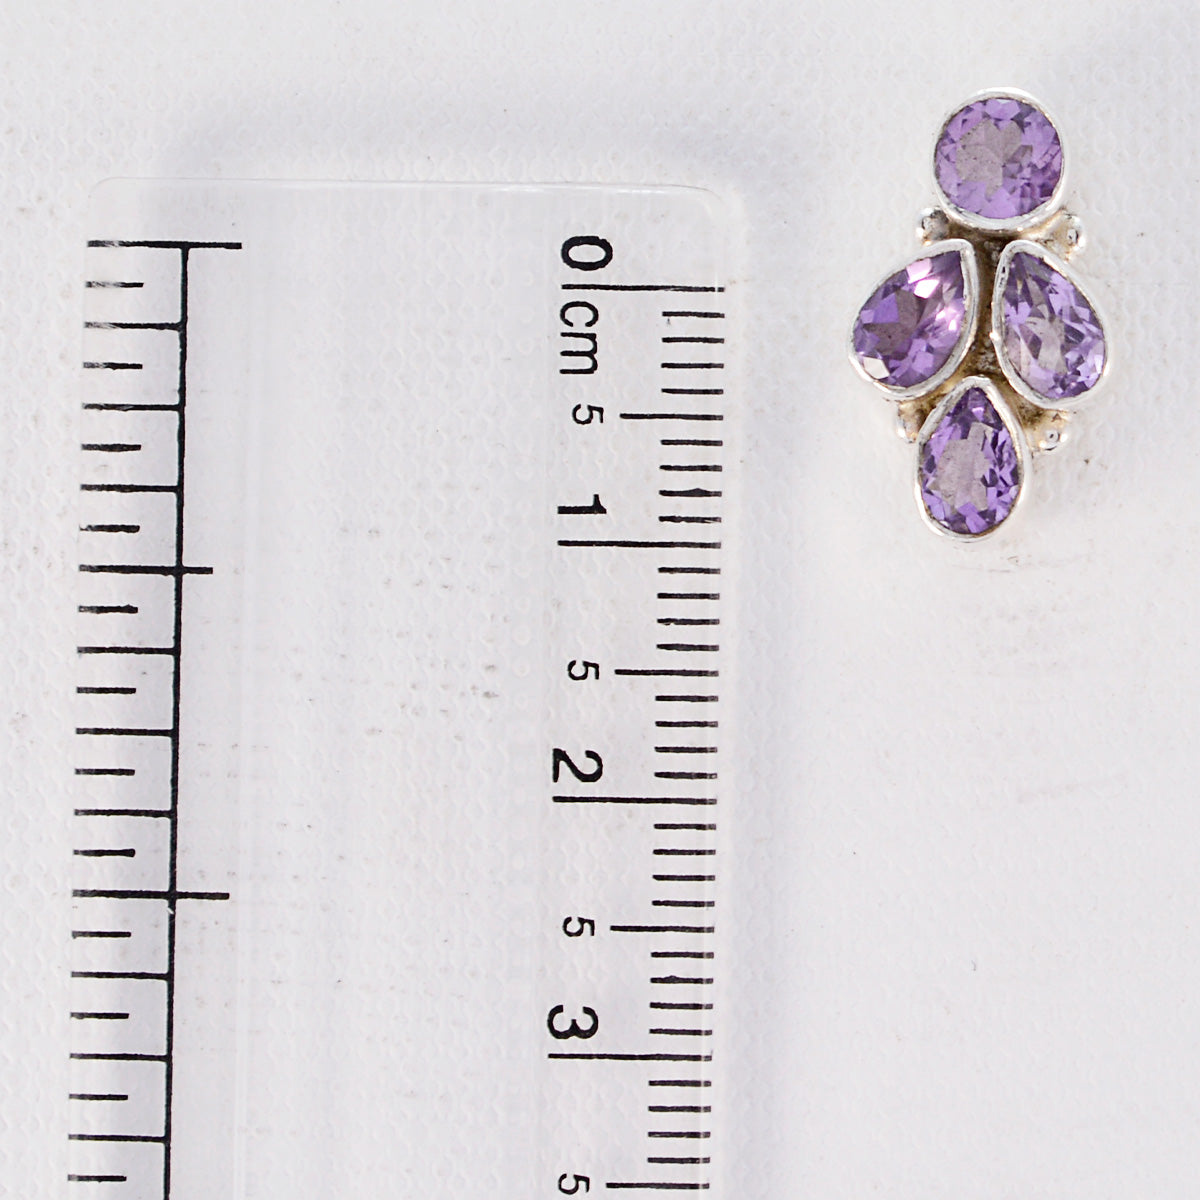 Riyo Nice Gemstone multi shape Faceted Purple Amethyst Silver Earrings gift for sister